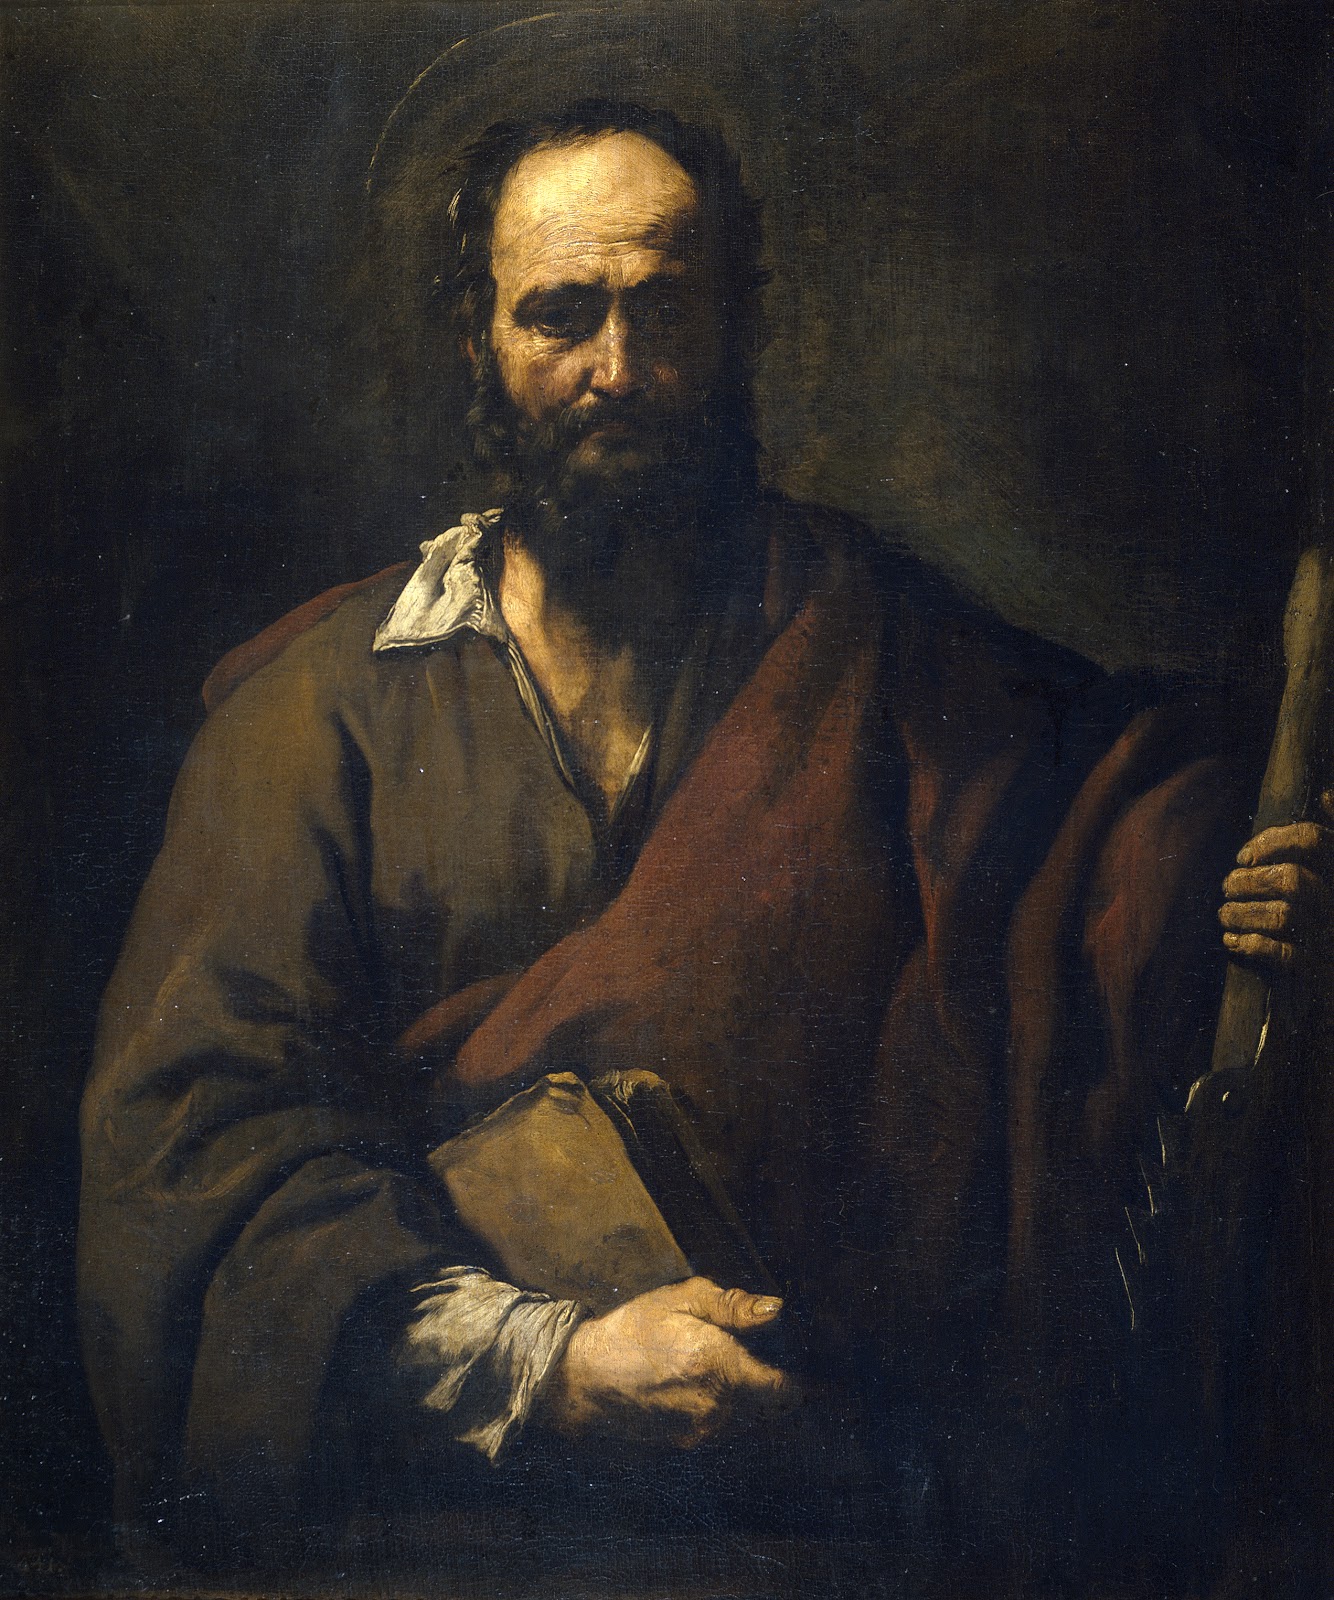 Jusepe+de+Ribera-1591-1652 (91).jpg